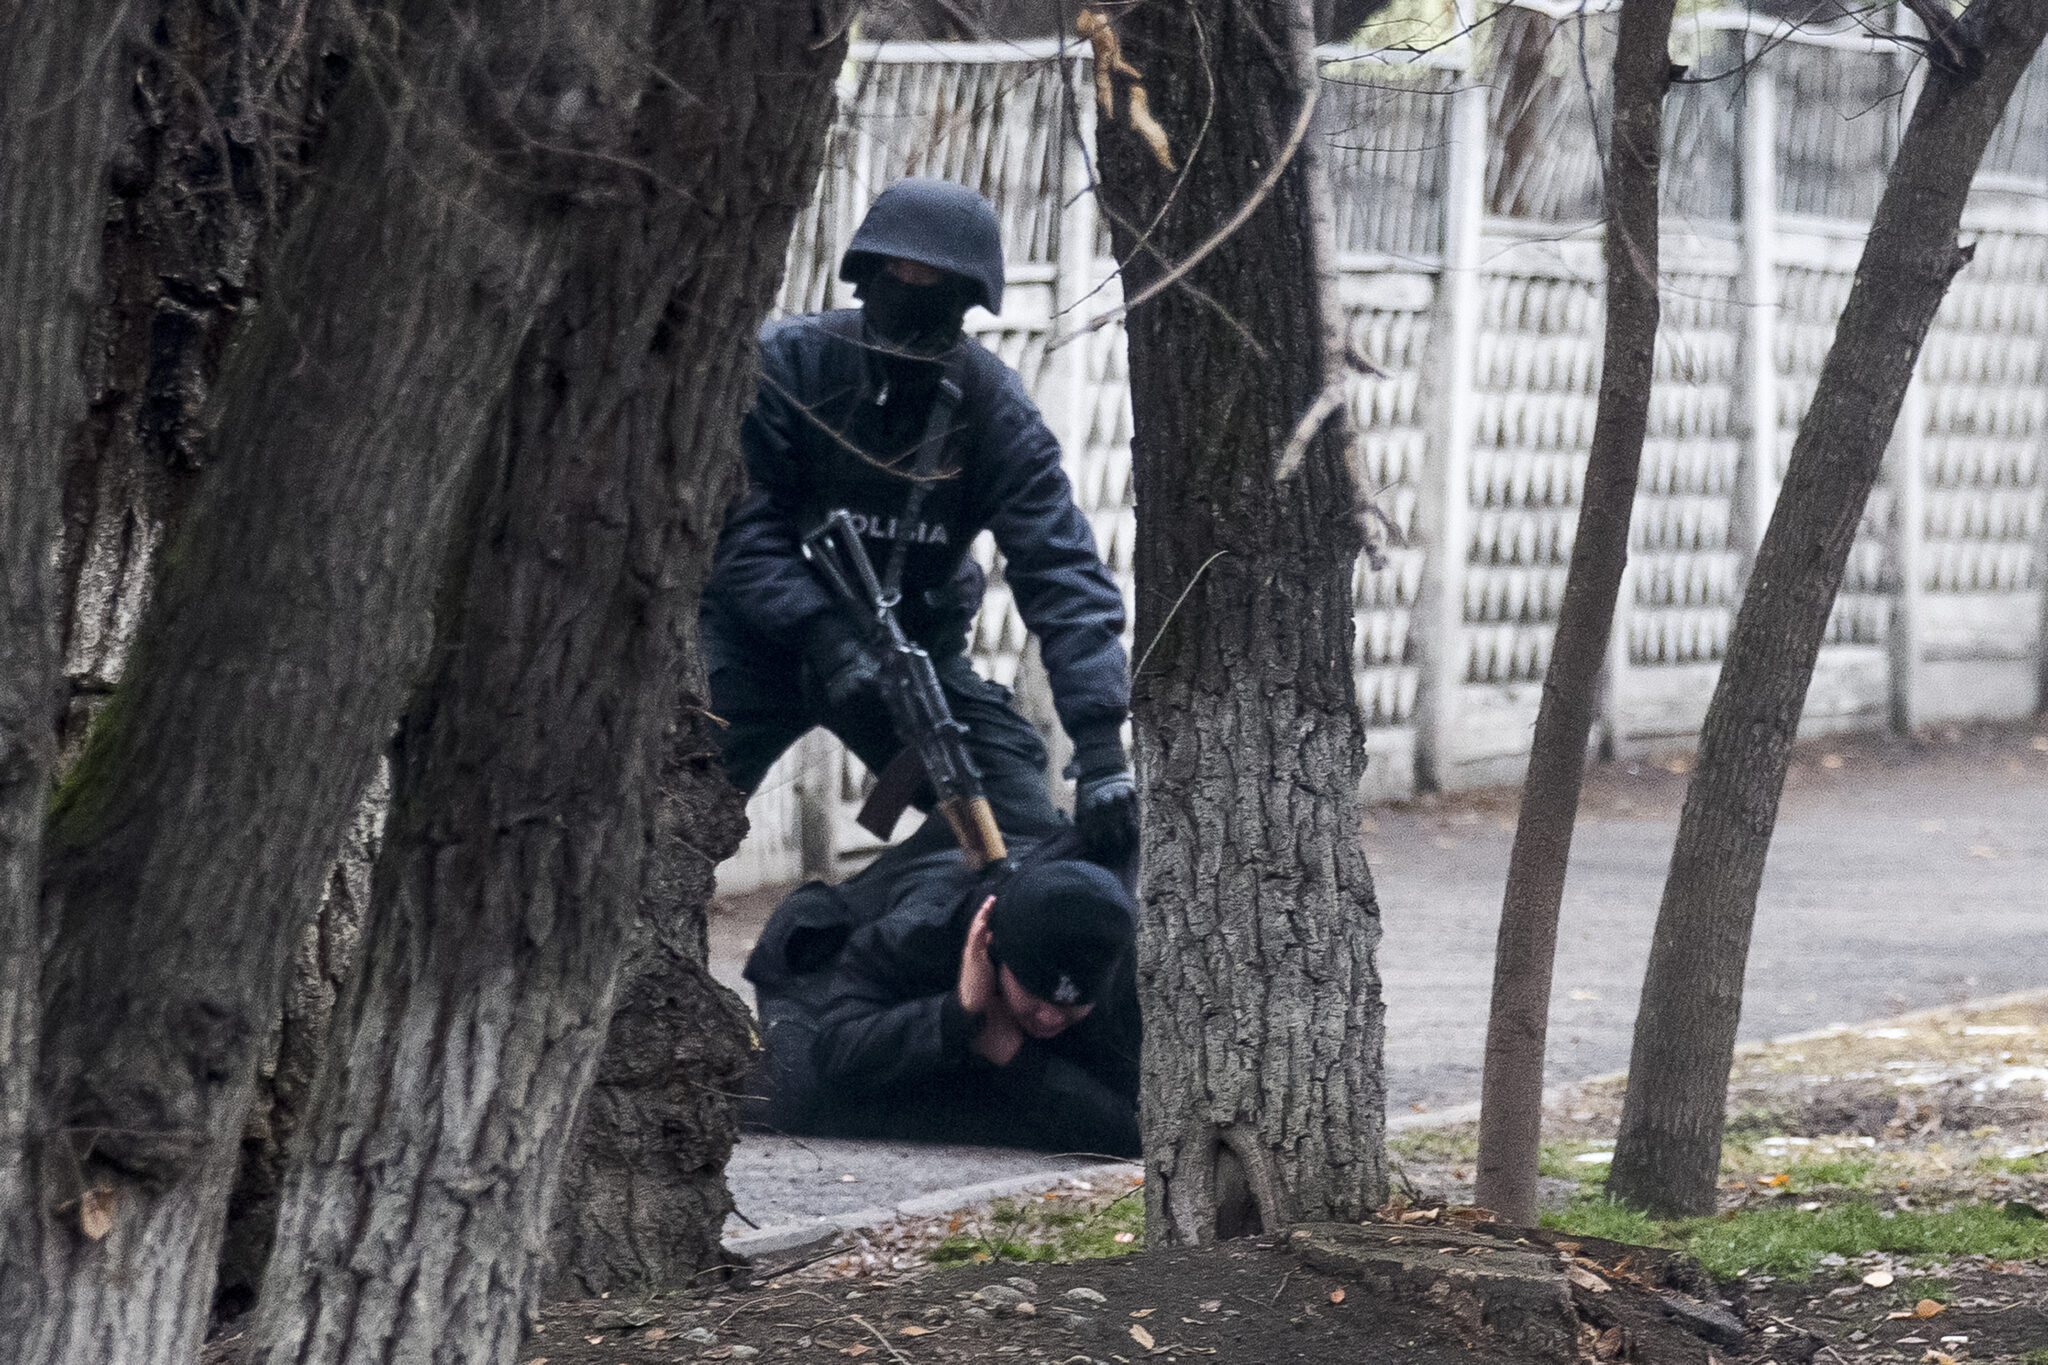 Вооруженный офицер ОМОНа задерживает протестующего во время операции на улице в Алматы. Фото Vasily Krestyaninov / TASS / Scanpix / Leta